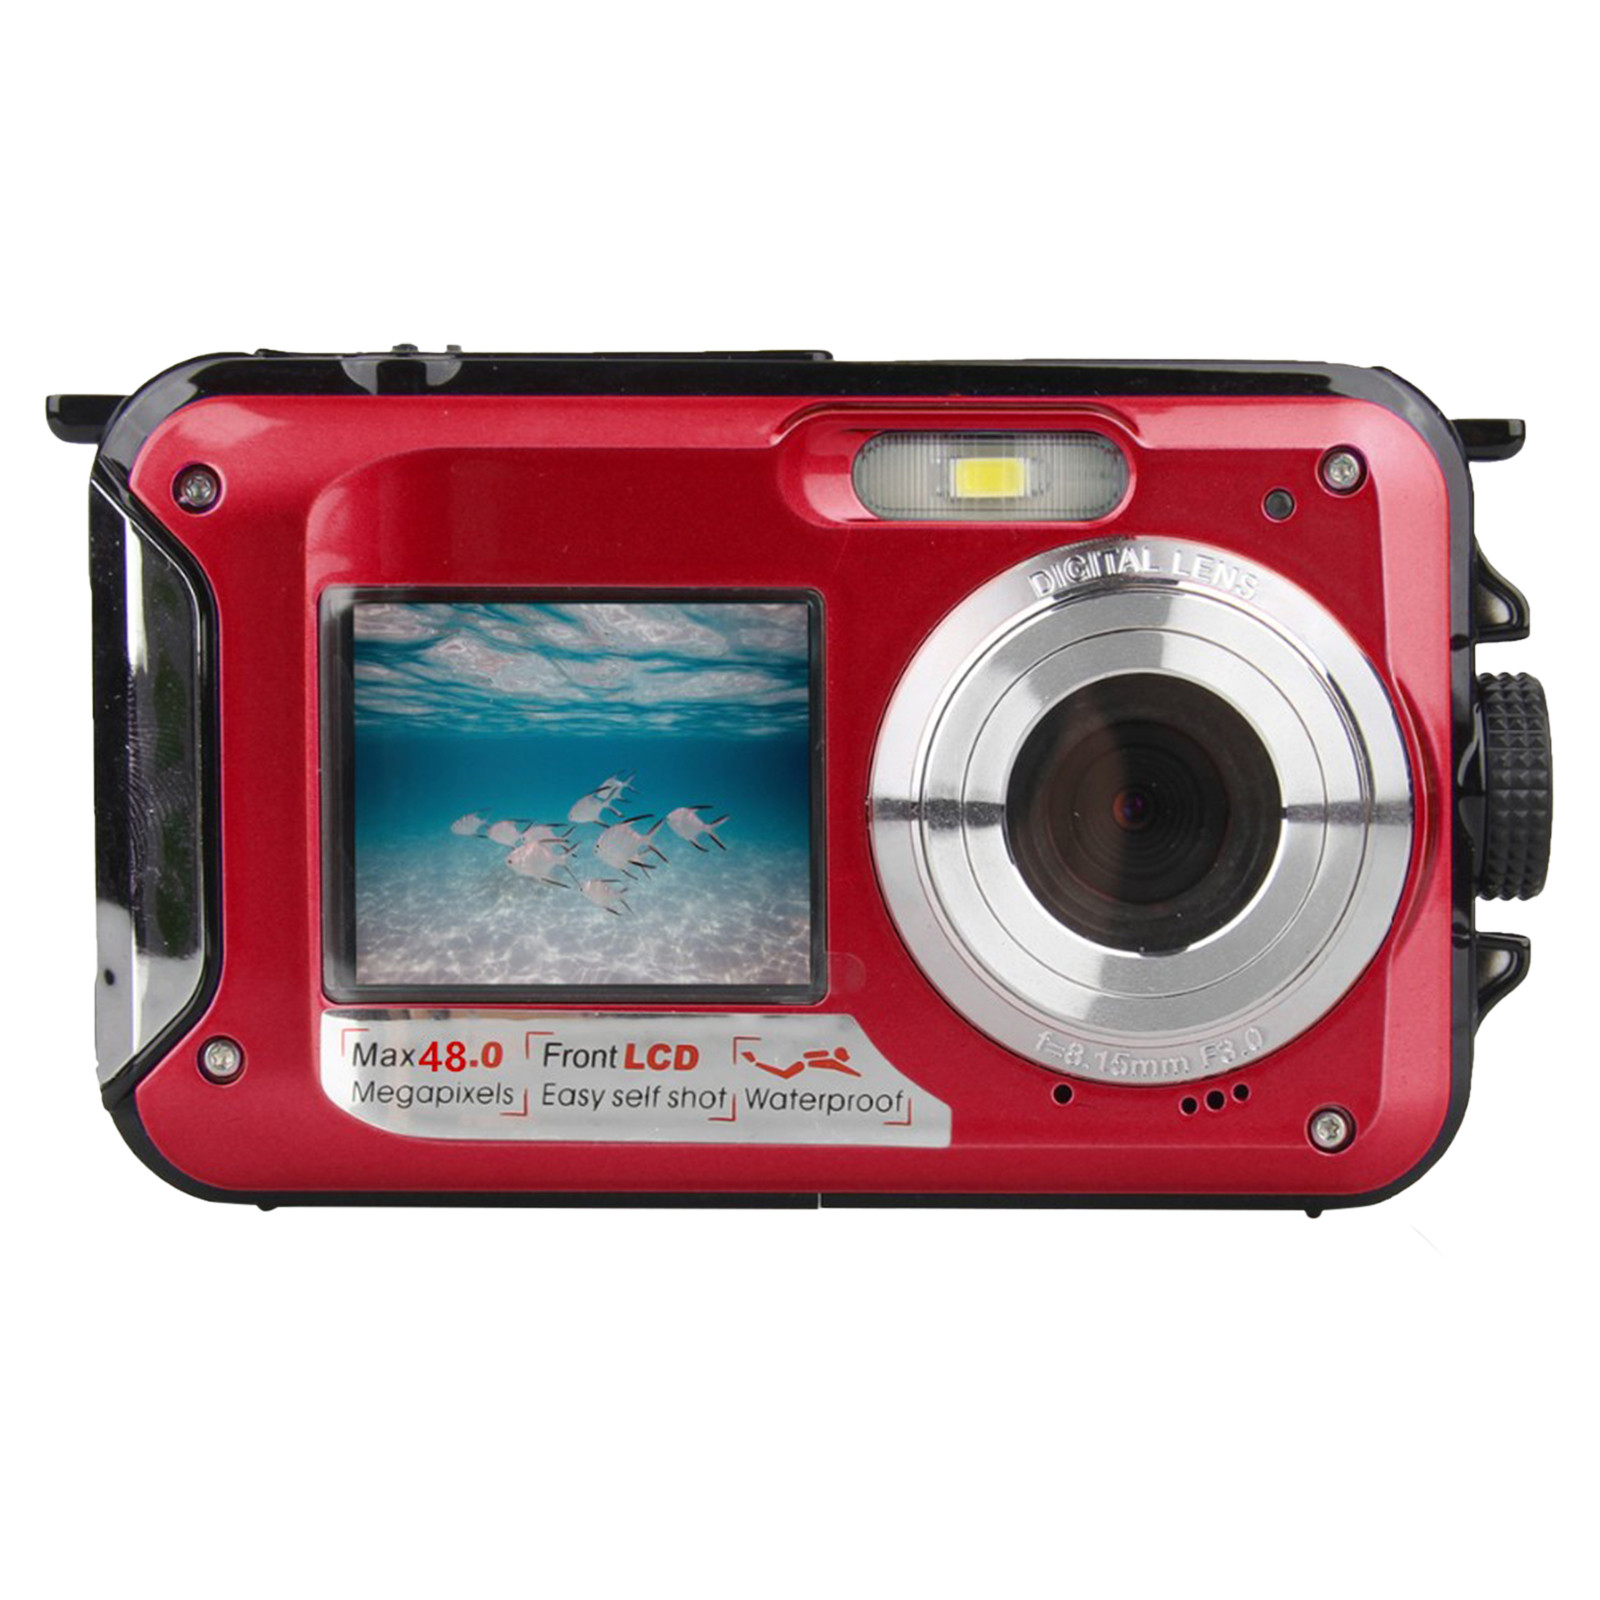 Feltree Electronics Accessories Waterproof Camera Underwater Cameras For Snorkeling Full HD 2.7K 48MP Video Recorder Selfie Dual Screens 10FT 16X Digital Zoom Waterproof Digital Camera - image 2 of 6